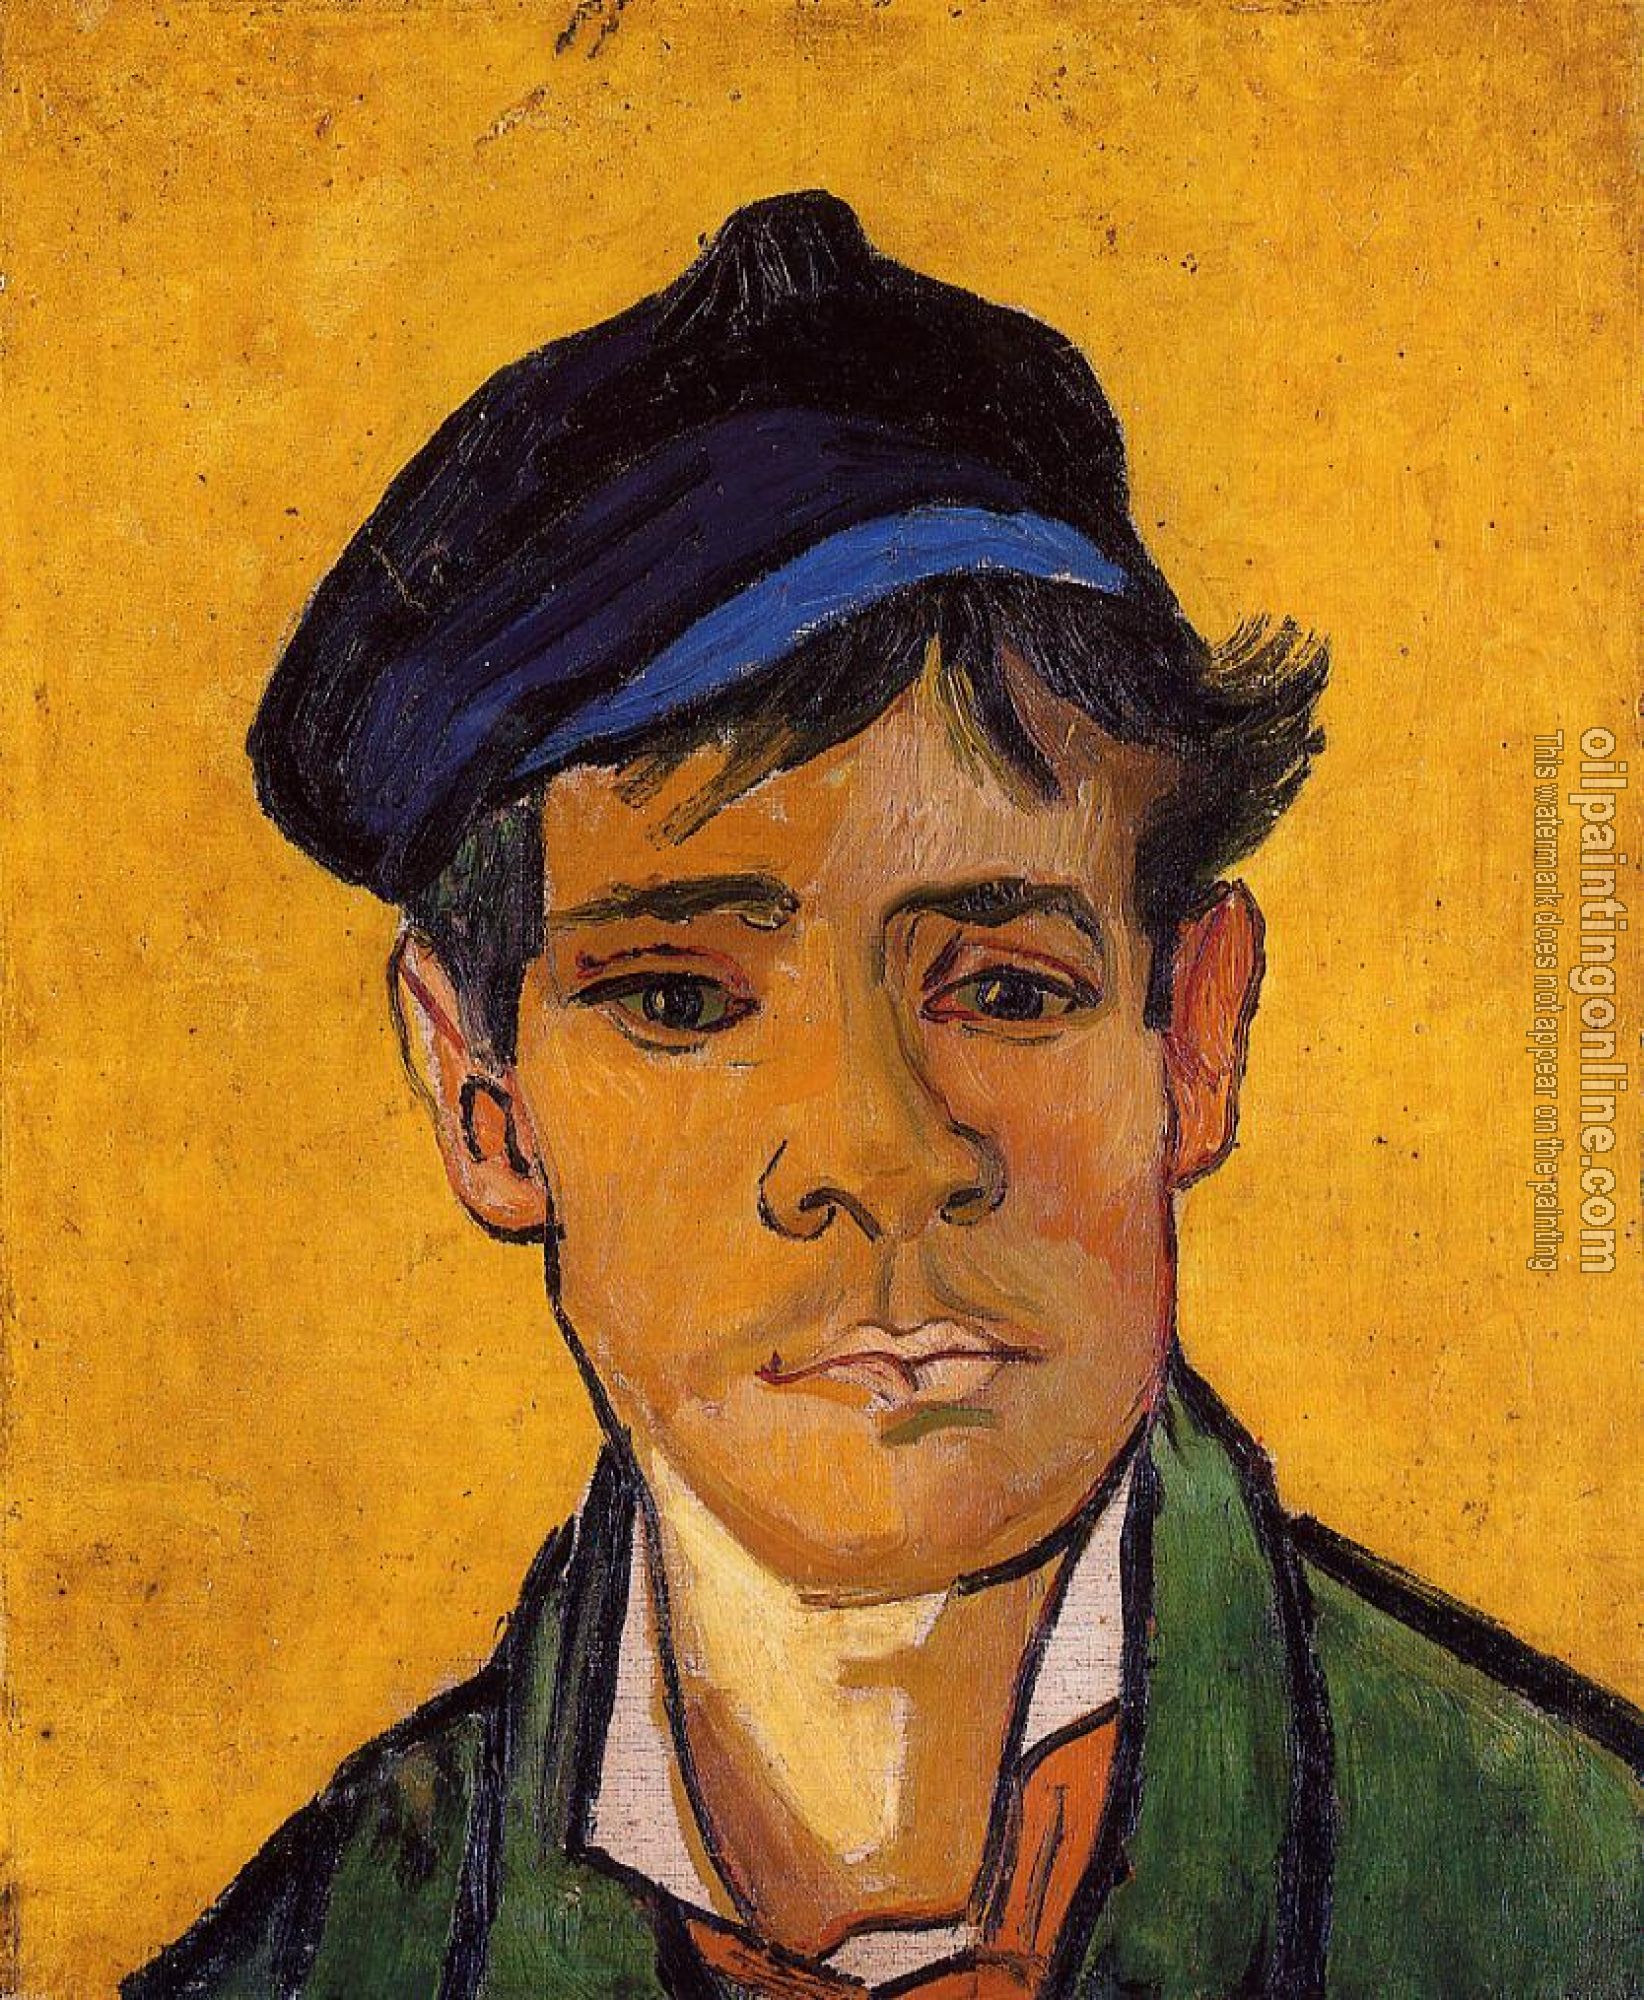 Gogh, Vincent van - Young Man in a Cap